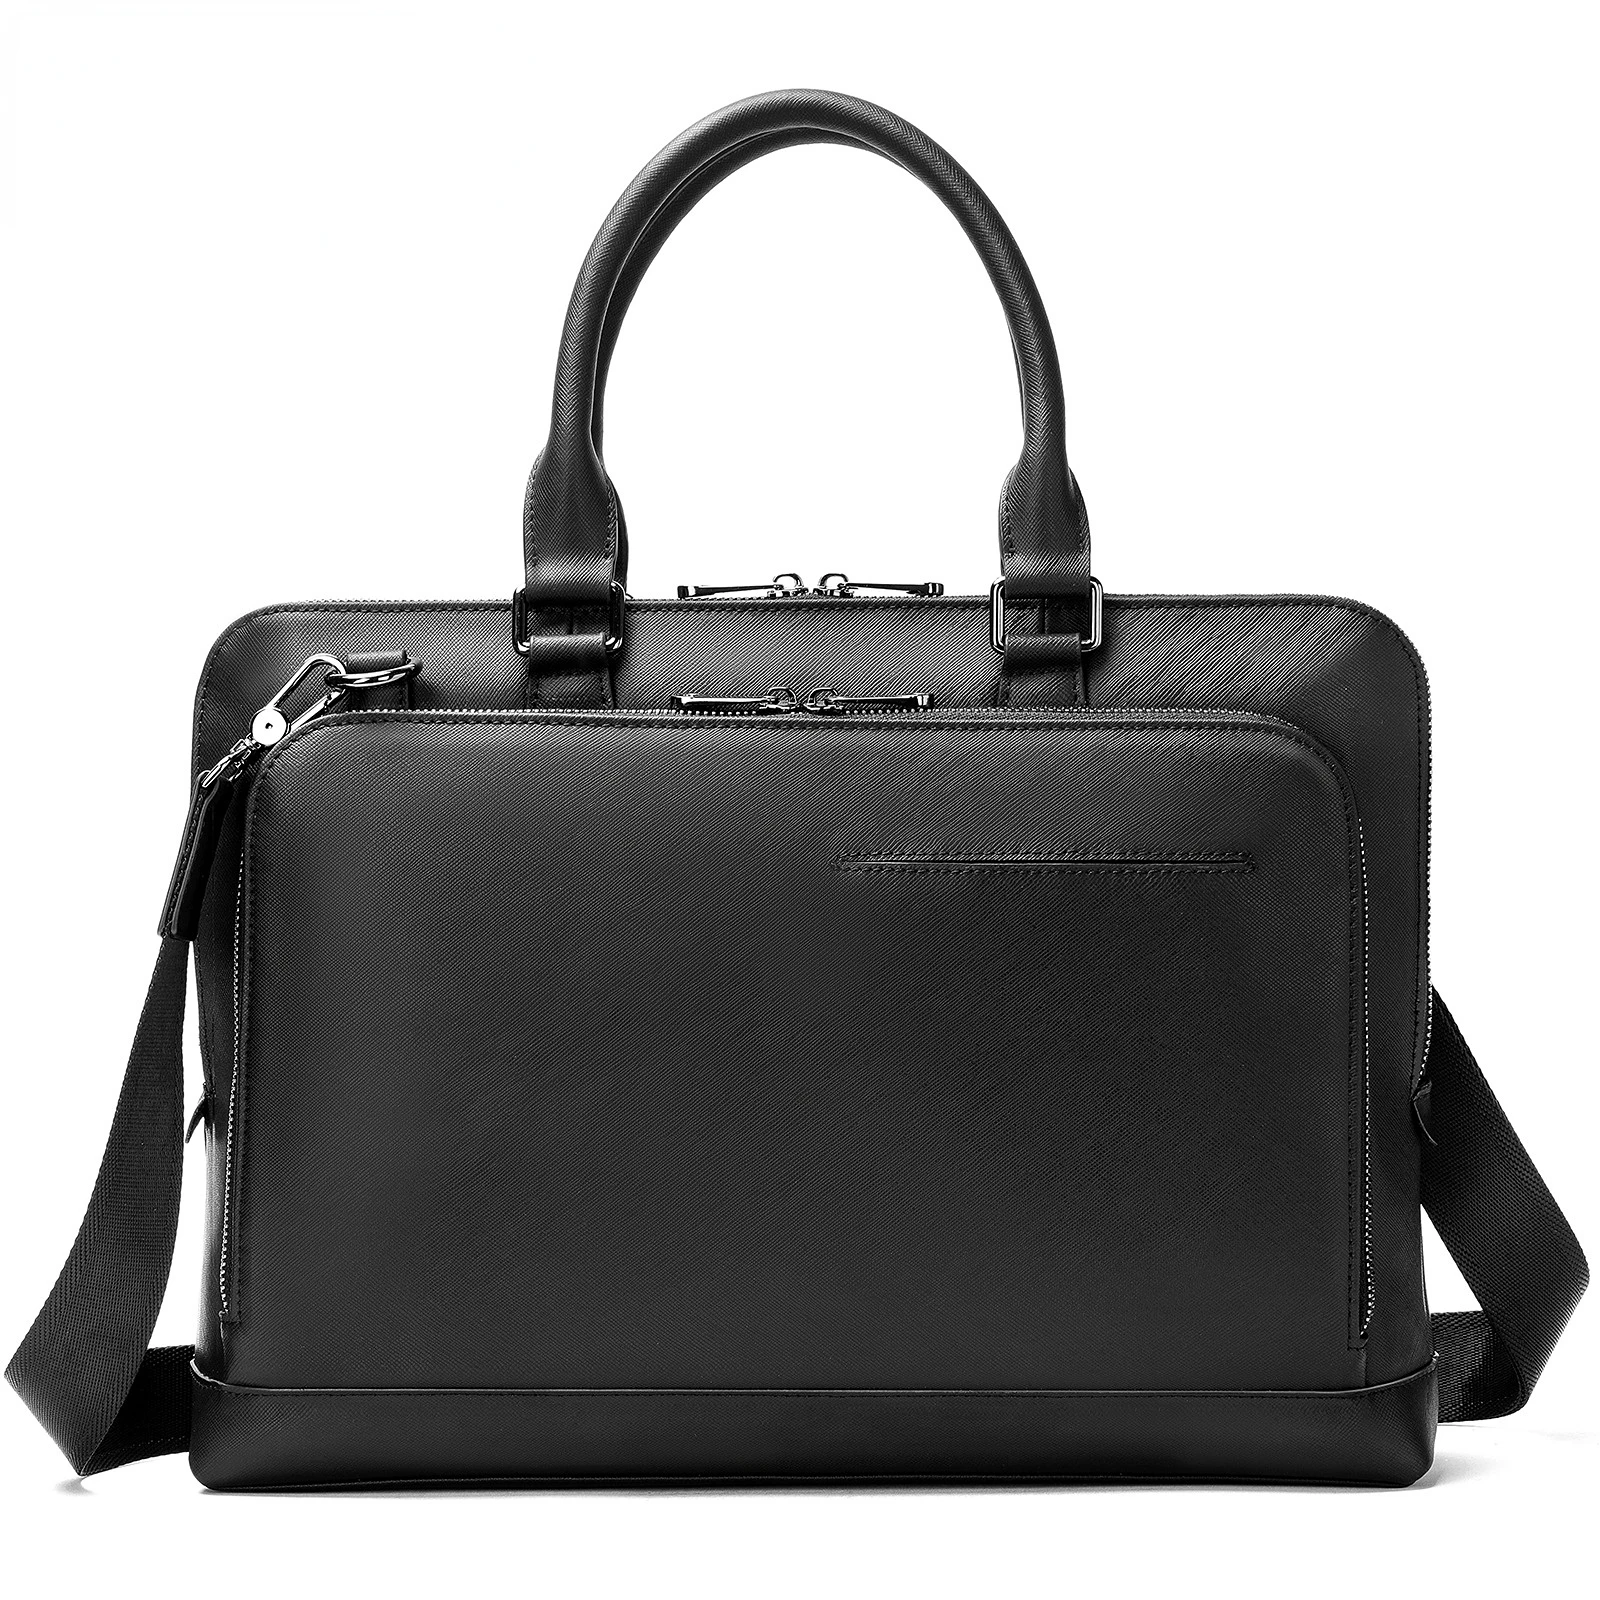 New Men's Bag One Shoulder Men's Briefcase Leather High Quality Business Handbag Messenger Bag Men Laptop Bags Office File